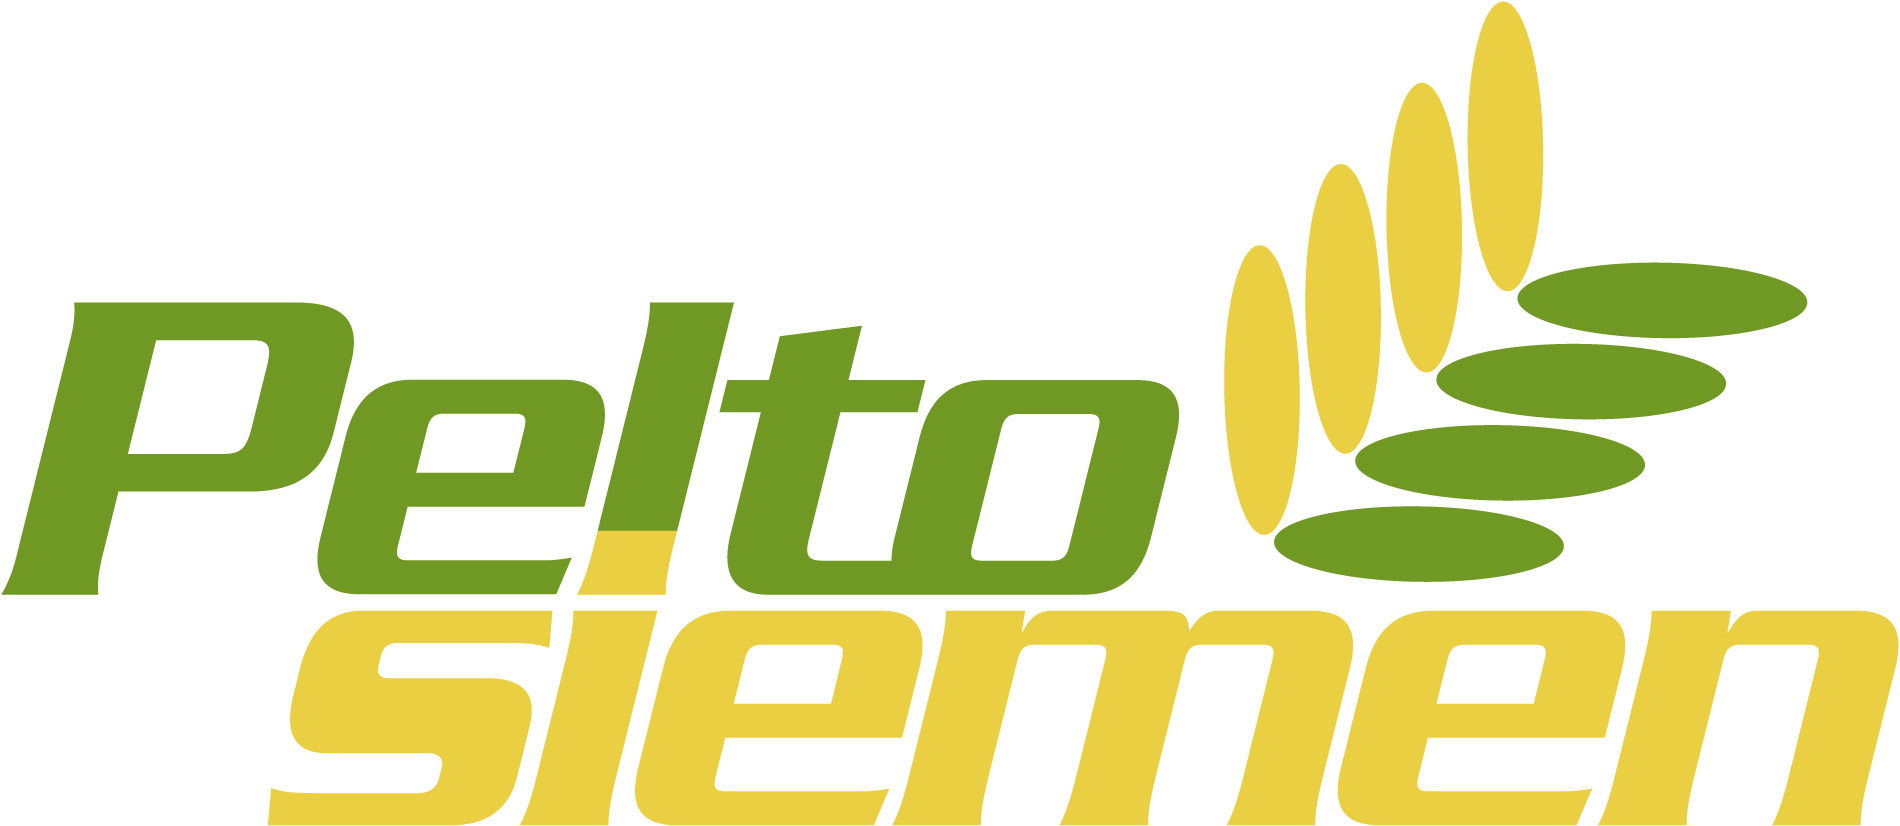 Peltosiemen -logo